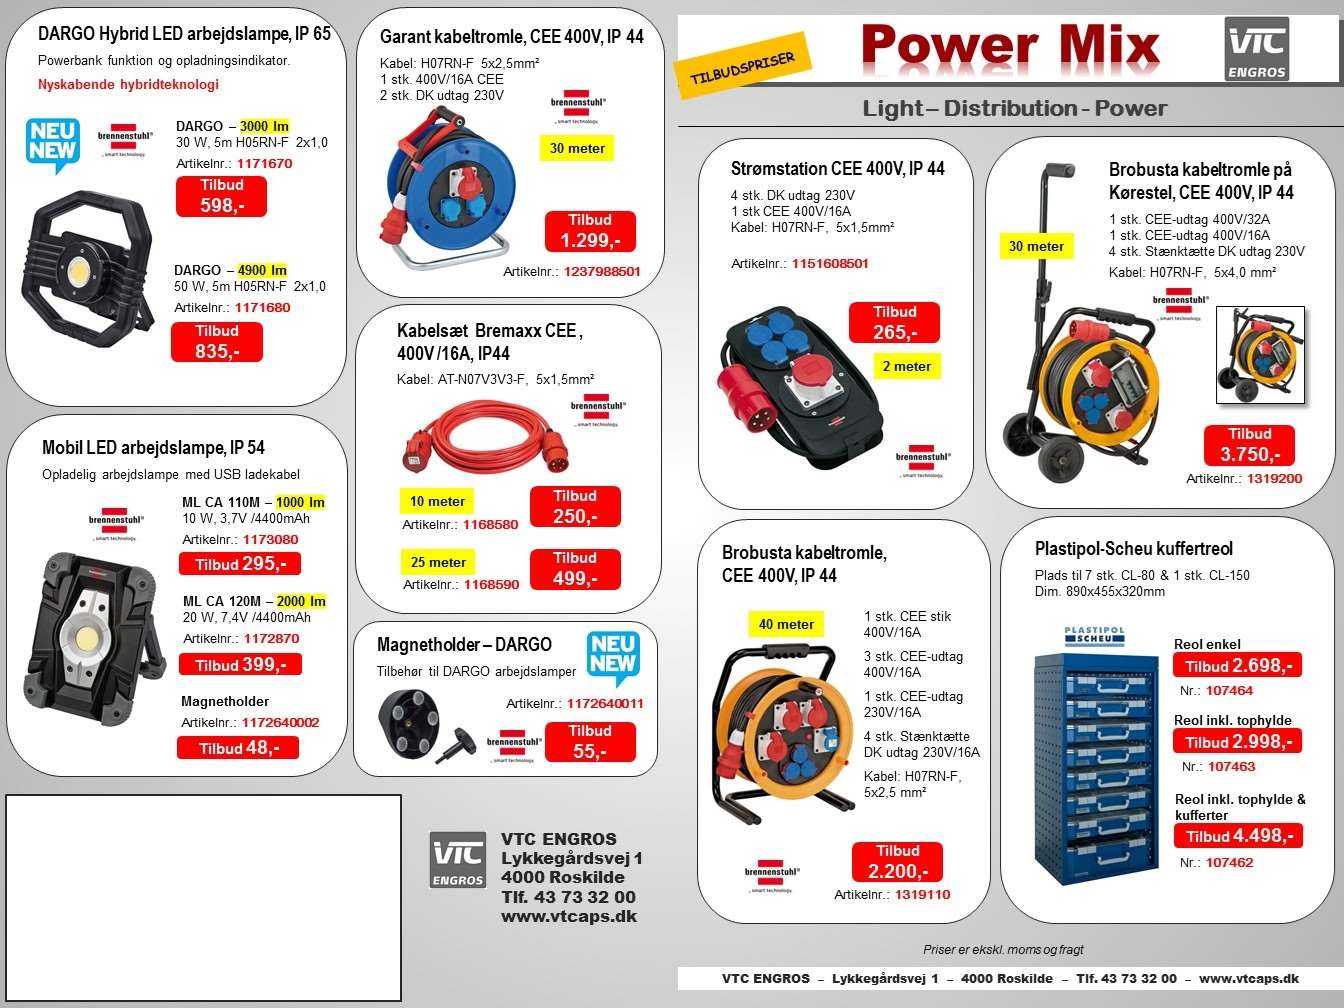 powermix